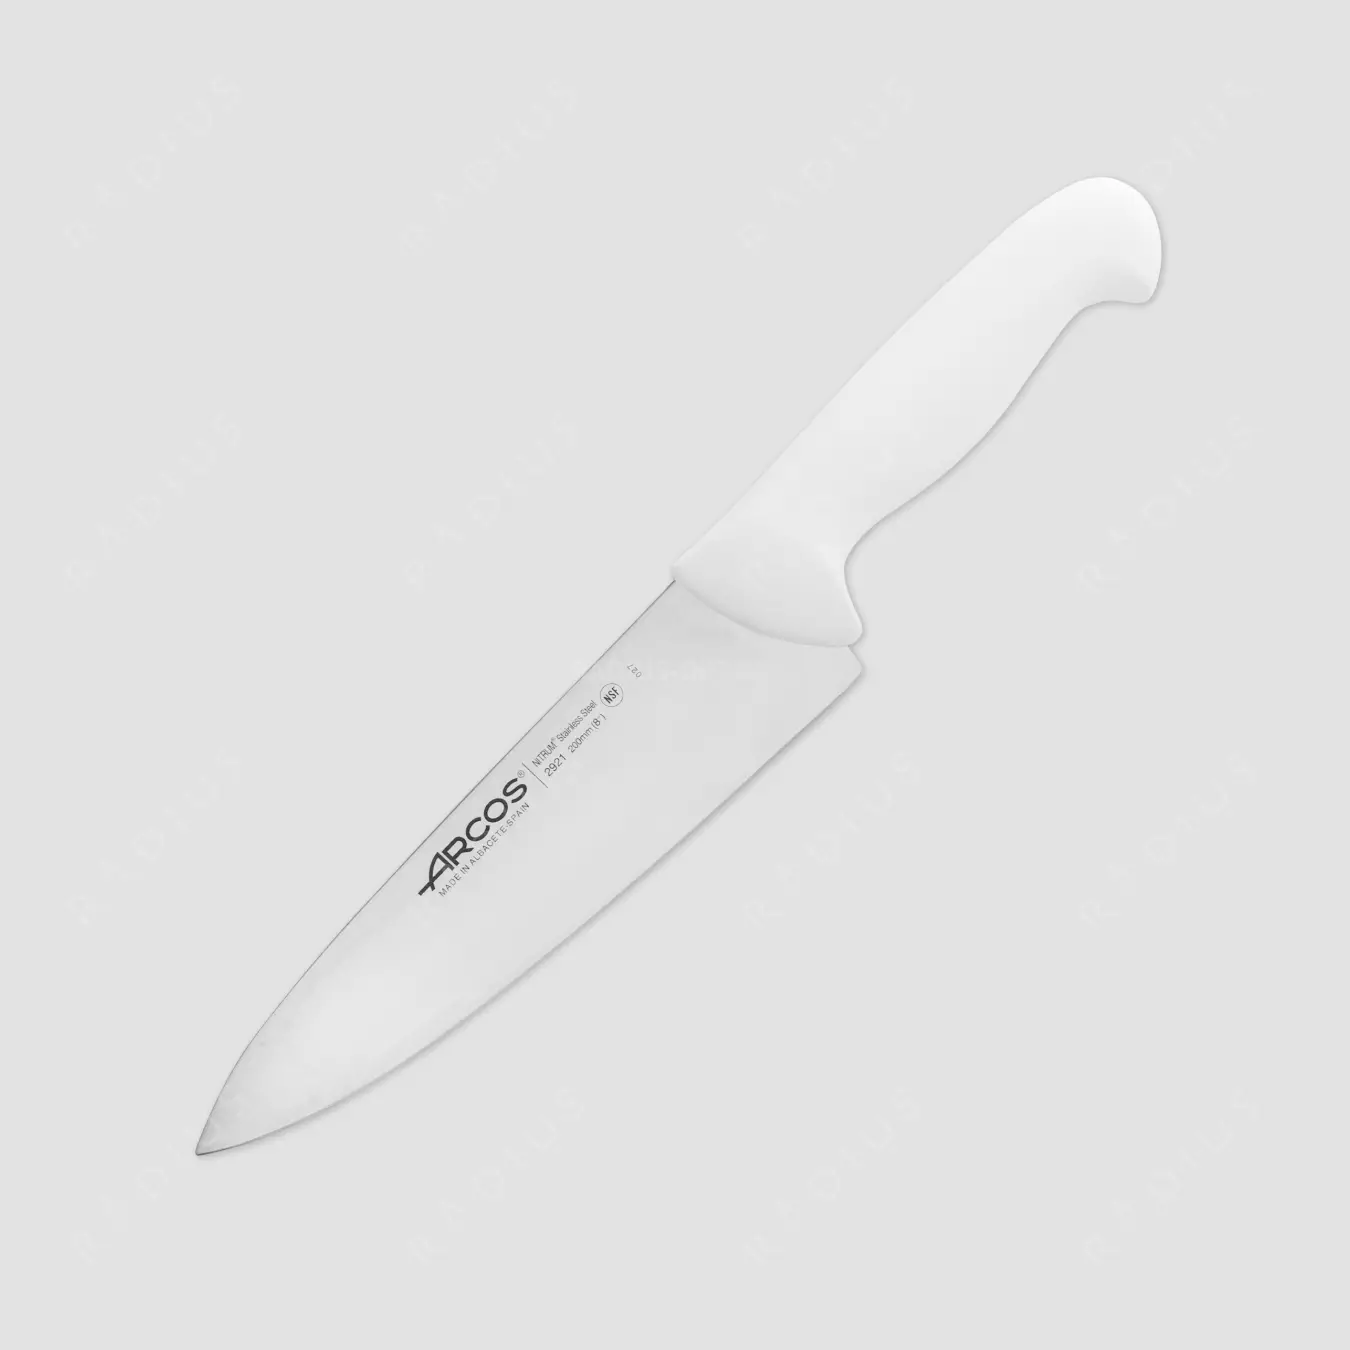 Arcos cuțite: un set de cuțite de bucătărie din Spania, bucătari spanioli forjată de la compania Arcos, cuțit bucătar pentru brânză, recenzii 25940_17